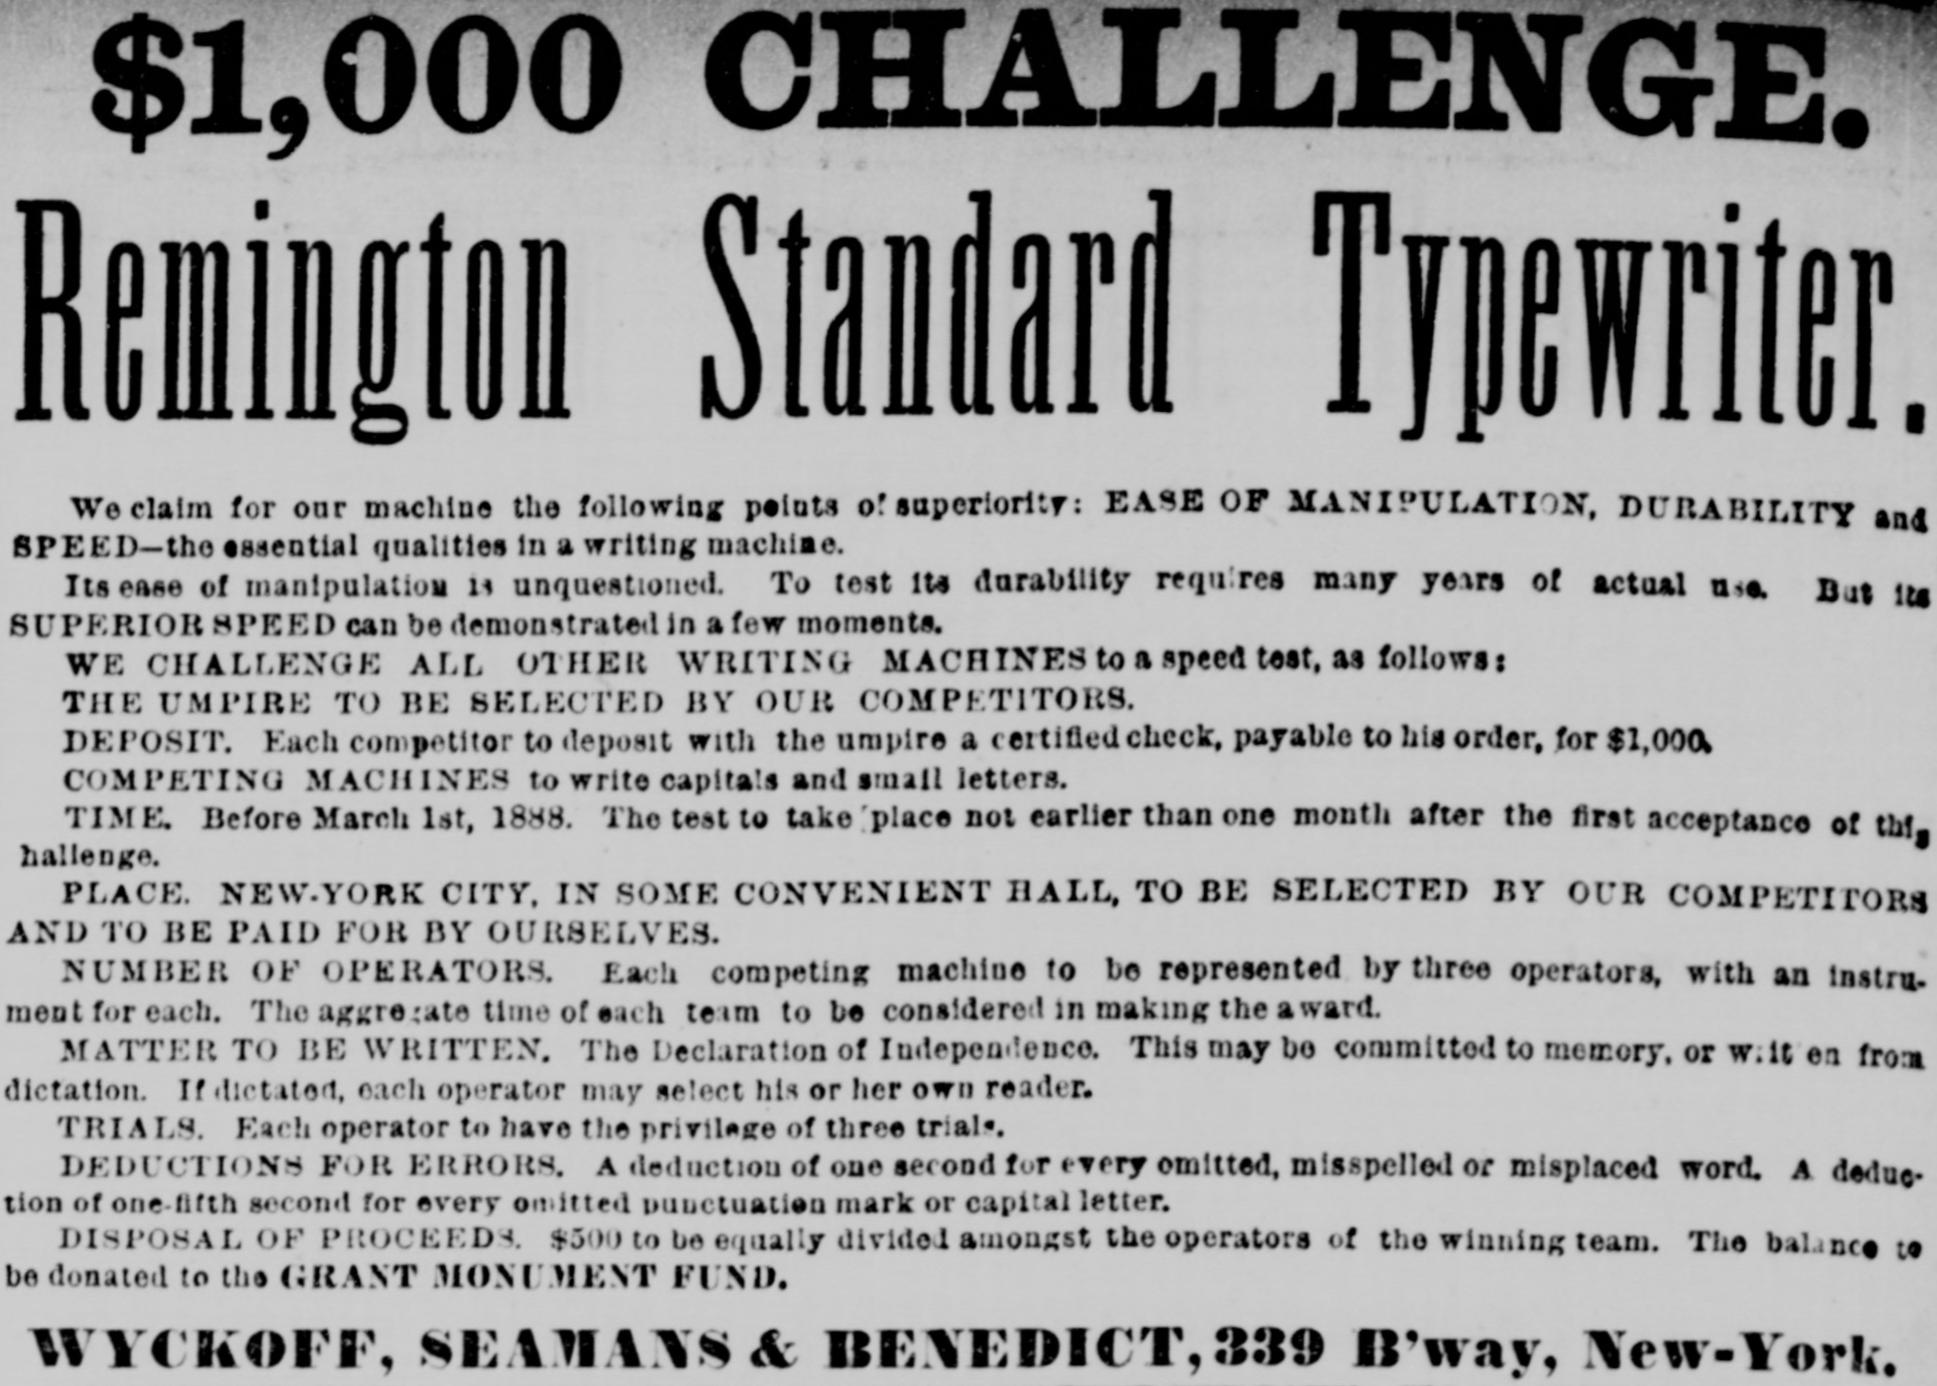 ウィックオフ・シーマンズ&ベネディクト社の広告「$1,000 CHALLENGE.」（『New-York Tribune』1887年12月7日）